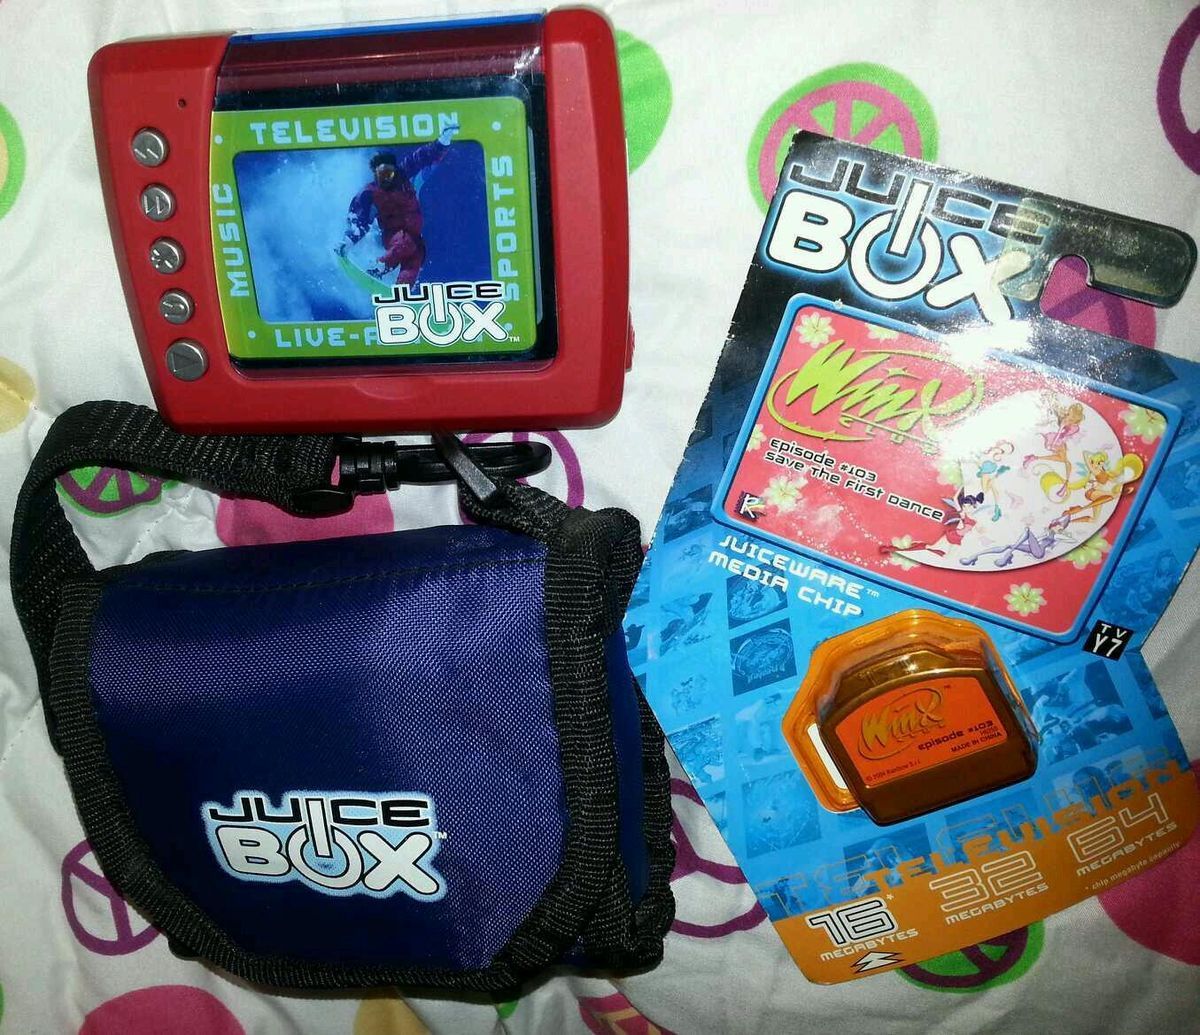 Mattel Juice Box Blue ( 512 MB ) Digital Media Player Red New In Box